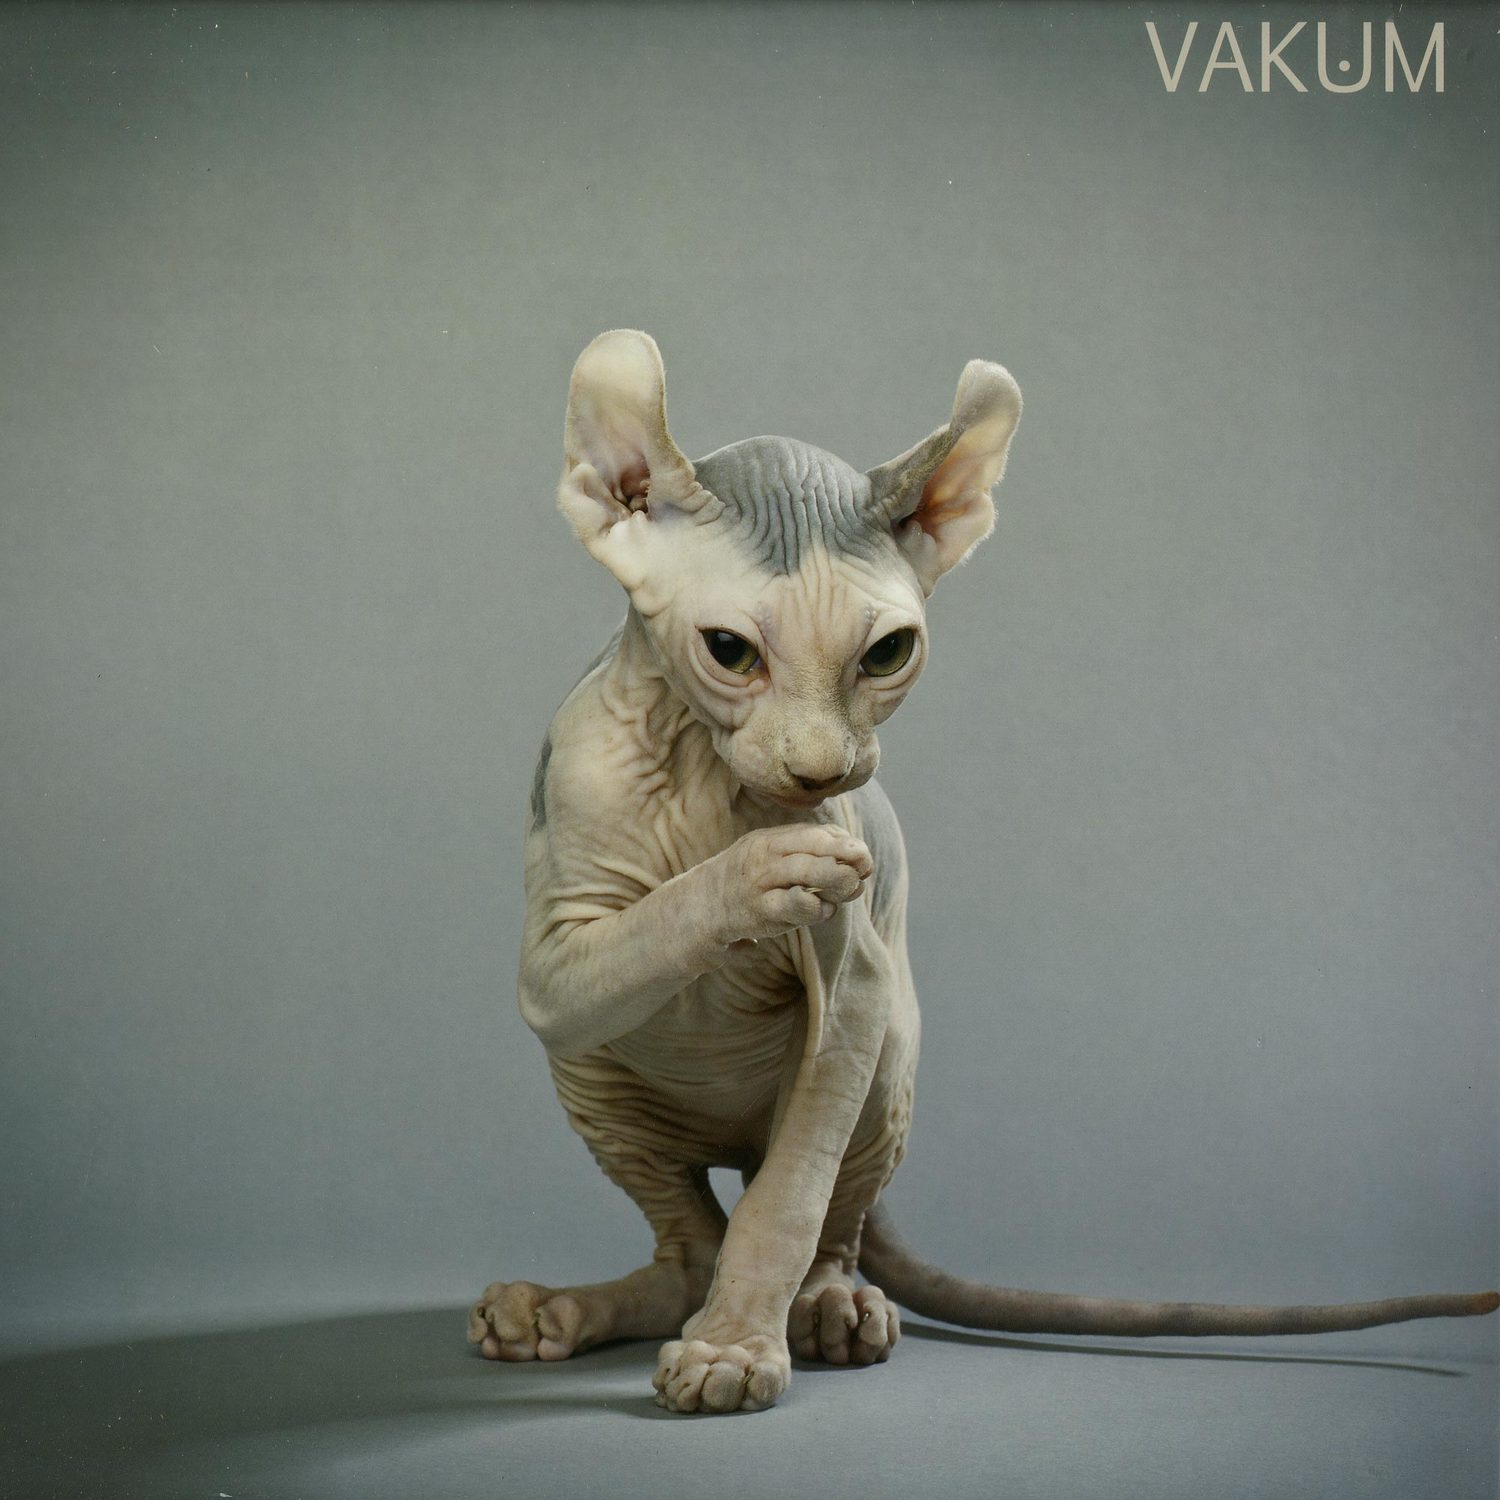 Vakum - KNOT EP 